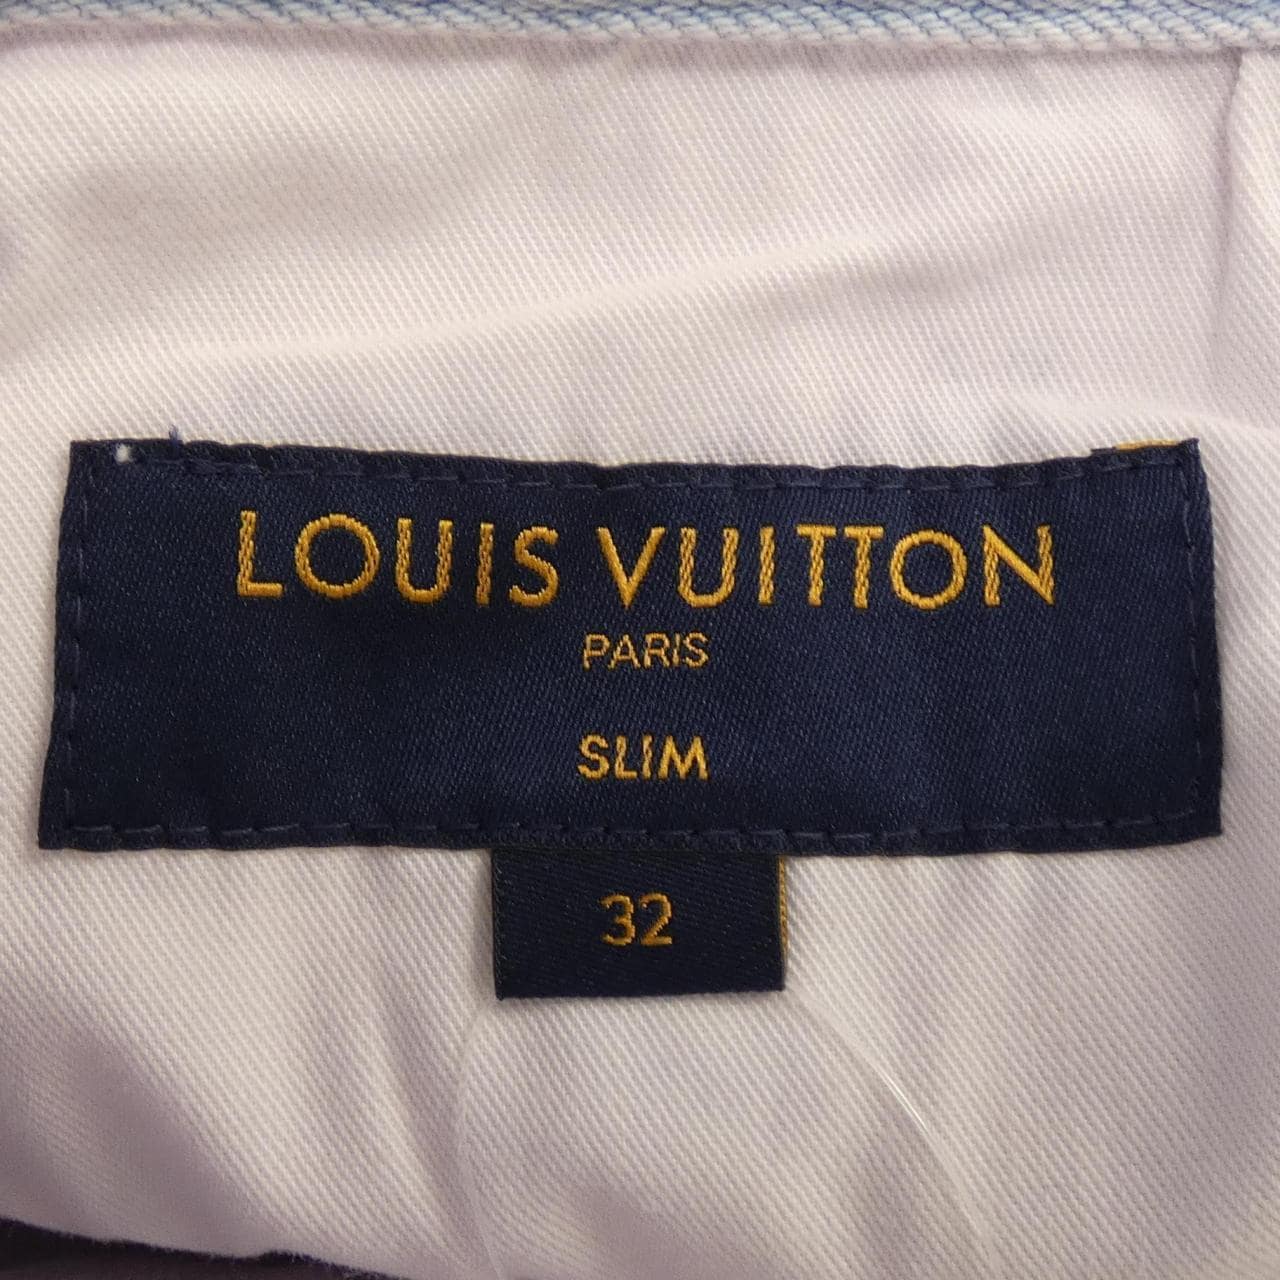 LOUIS VUITTON牛仔褲